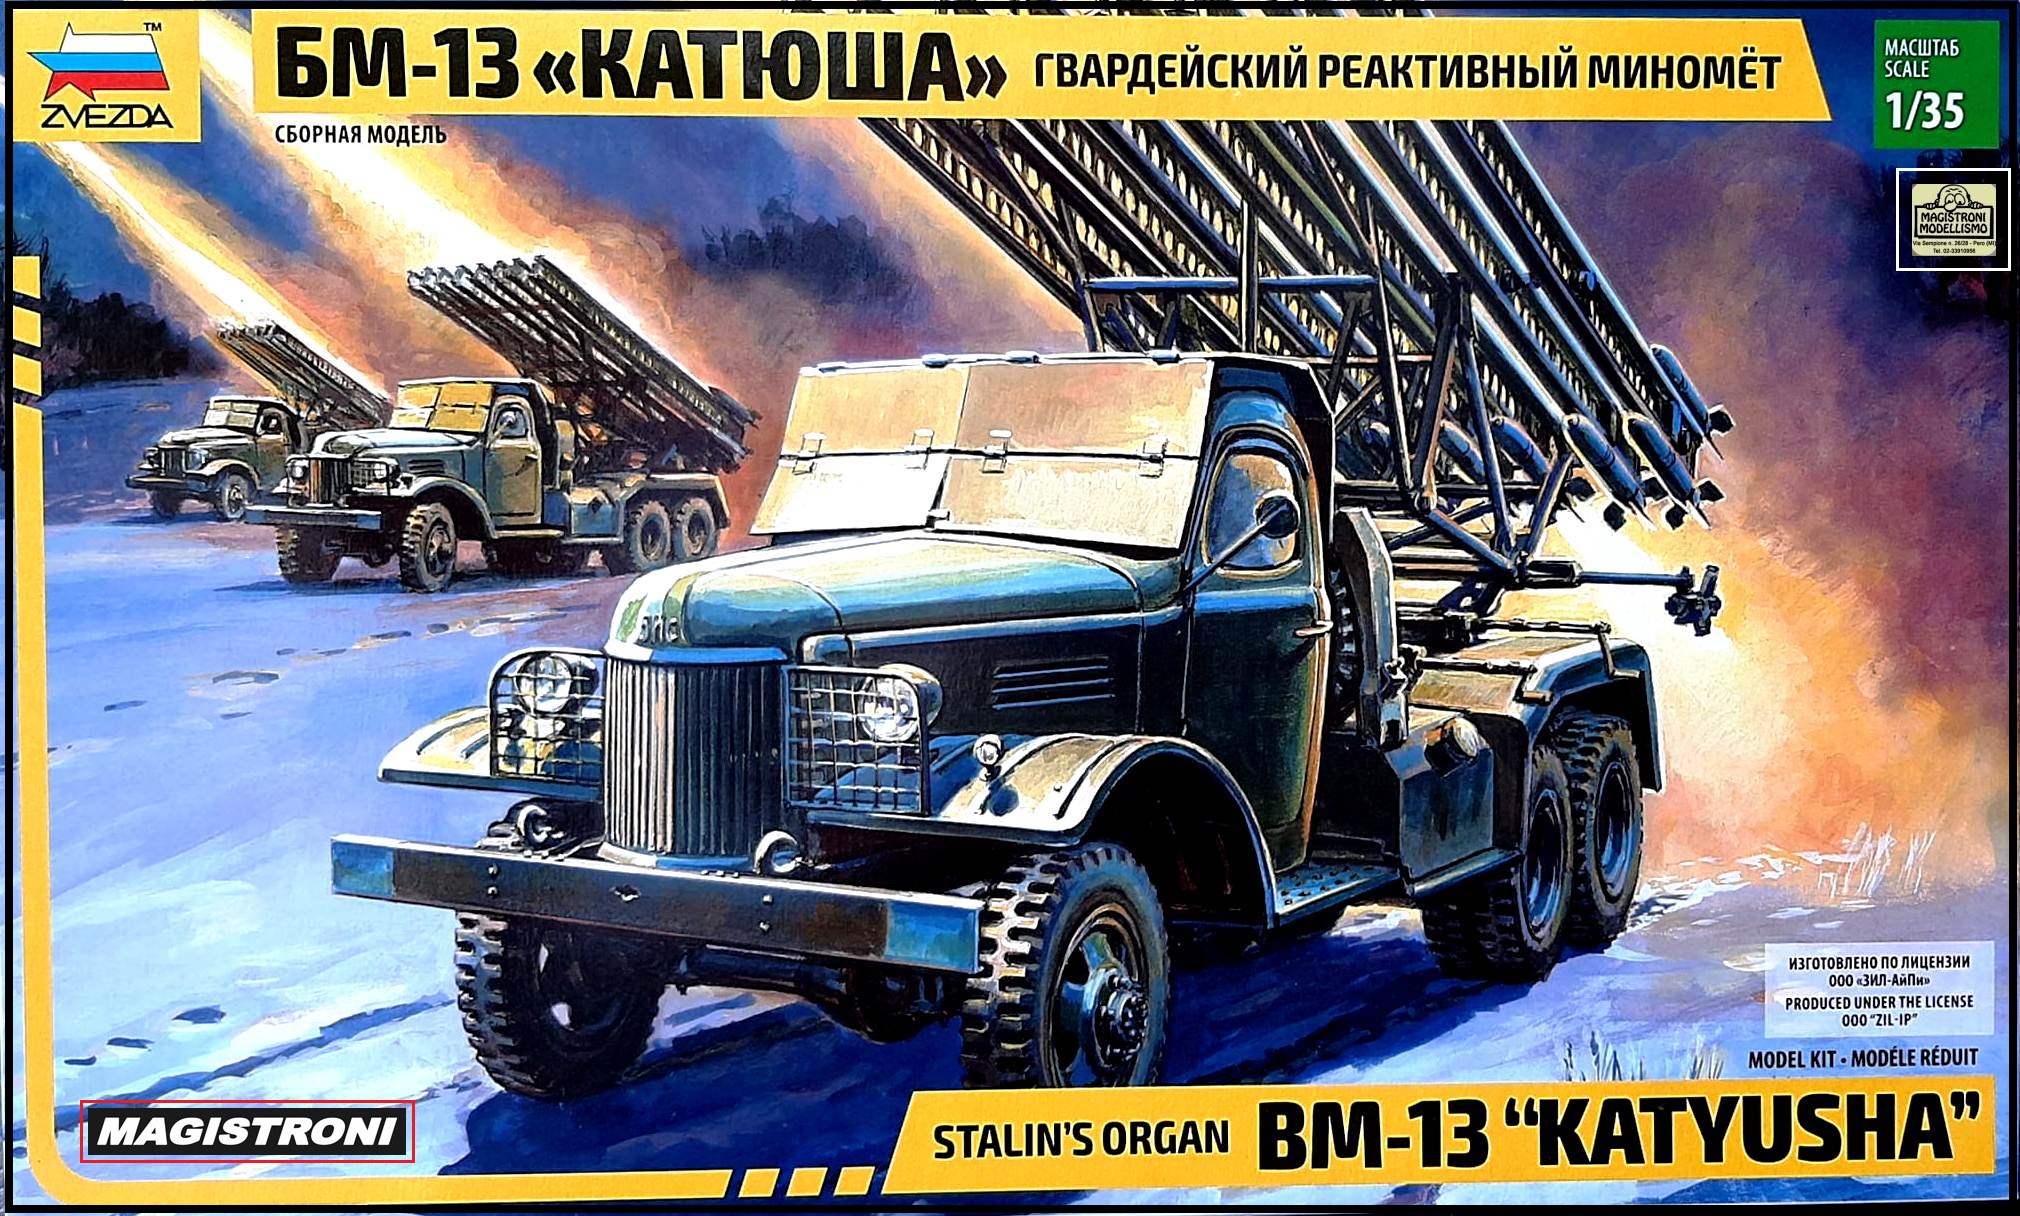 STALIN 'S ORGAN BM-13 "KATYUSHA"